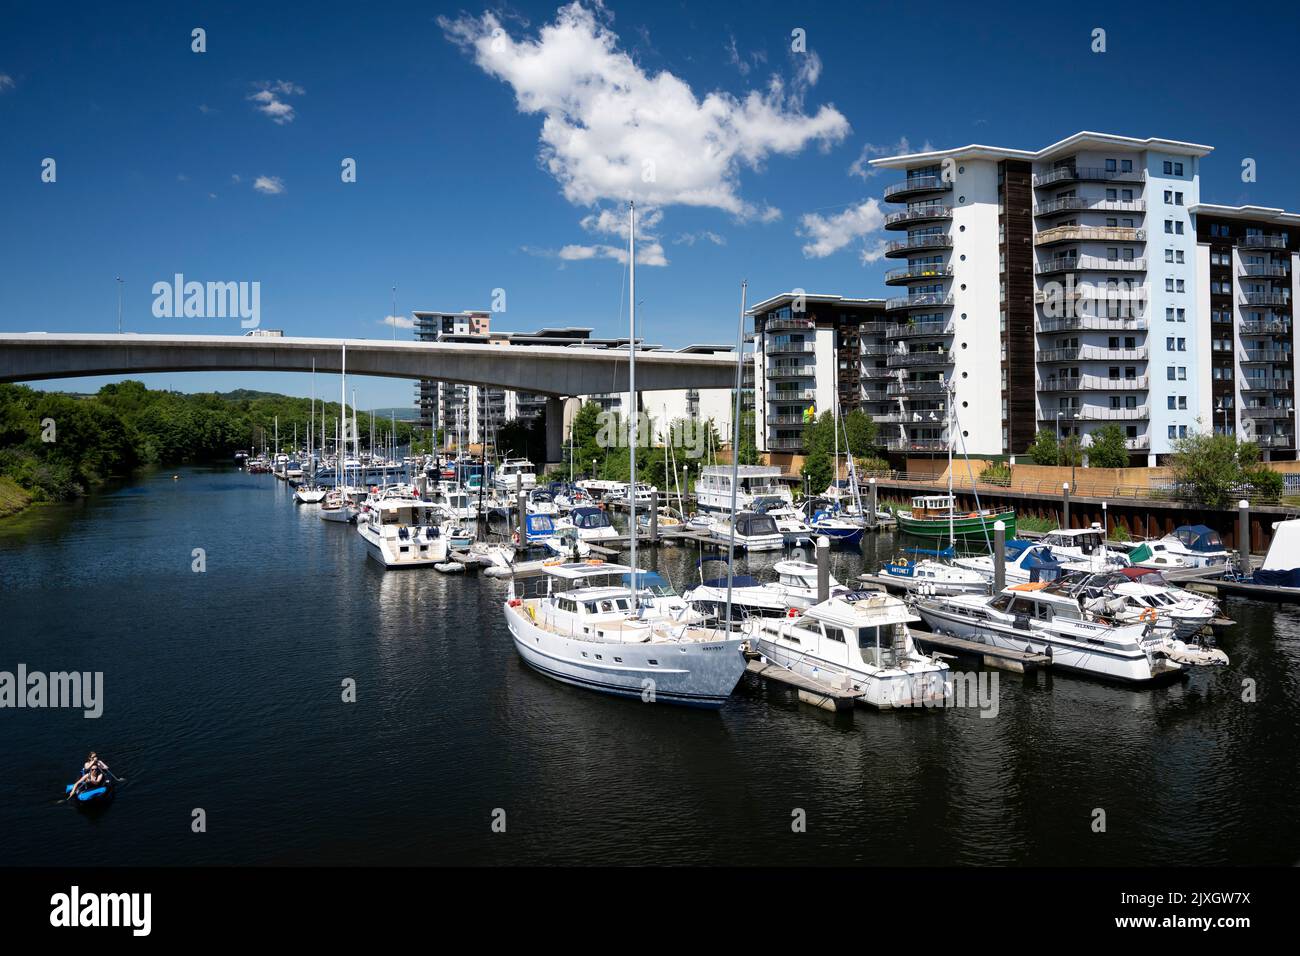 Boote vor blauem Himmel in der Nähe der Wohnungen der Atlantic Wharf am Fluss Ely in Cardiff, Wales, Vereinigtes Königreich. Stockfoto